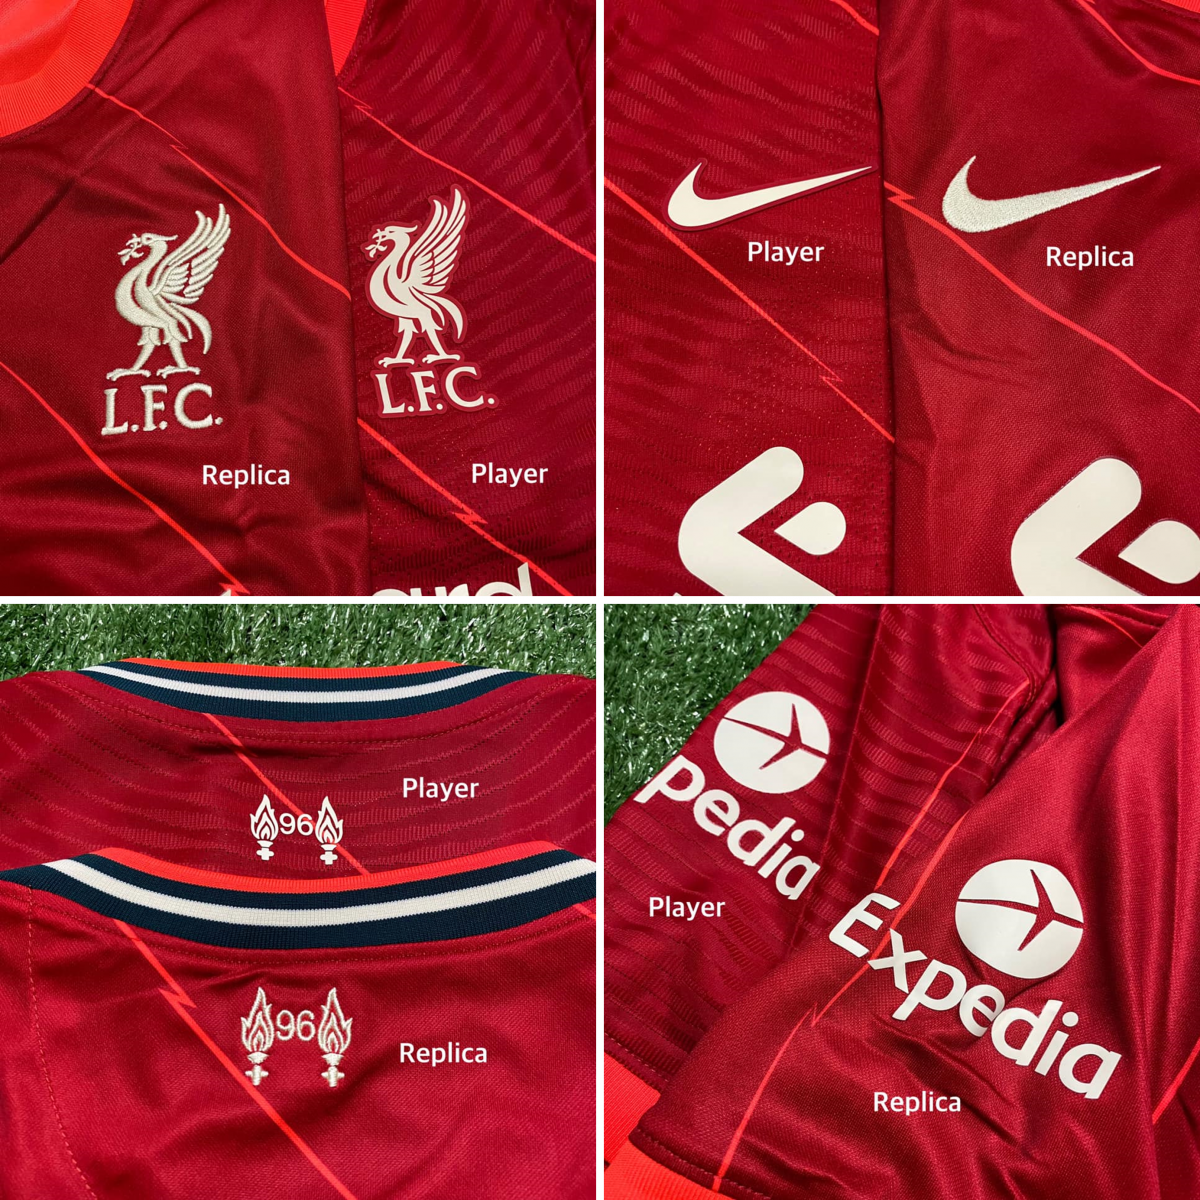 나이키에서 제작한 2021-2022 FC 리버풀의 선수용과 팬용 유니폼을 비교한 사진이다. 2가지 버전을 비교해 보면 디테일 차이가 나는 것을 알 수 있다.